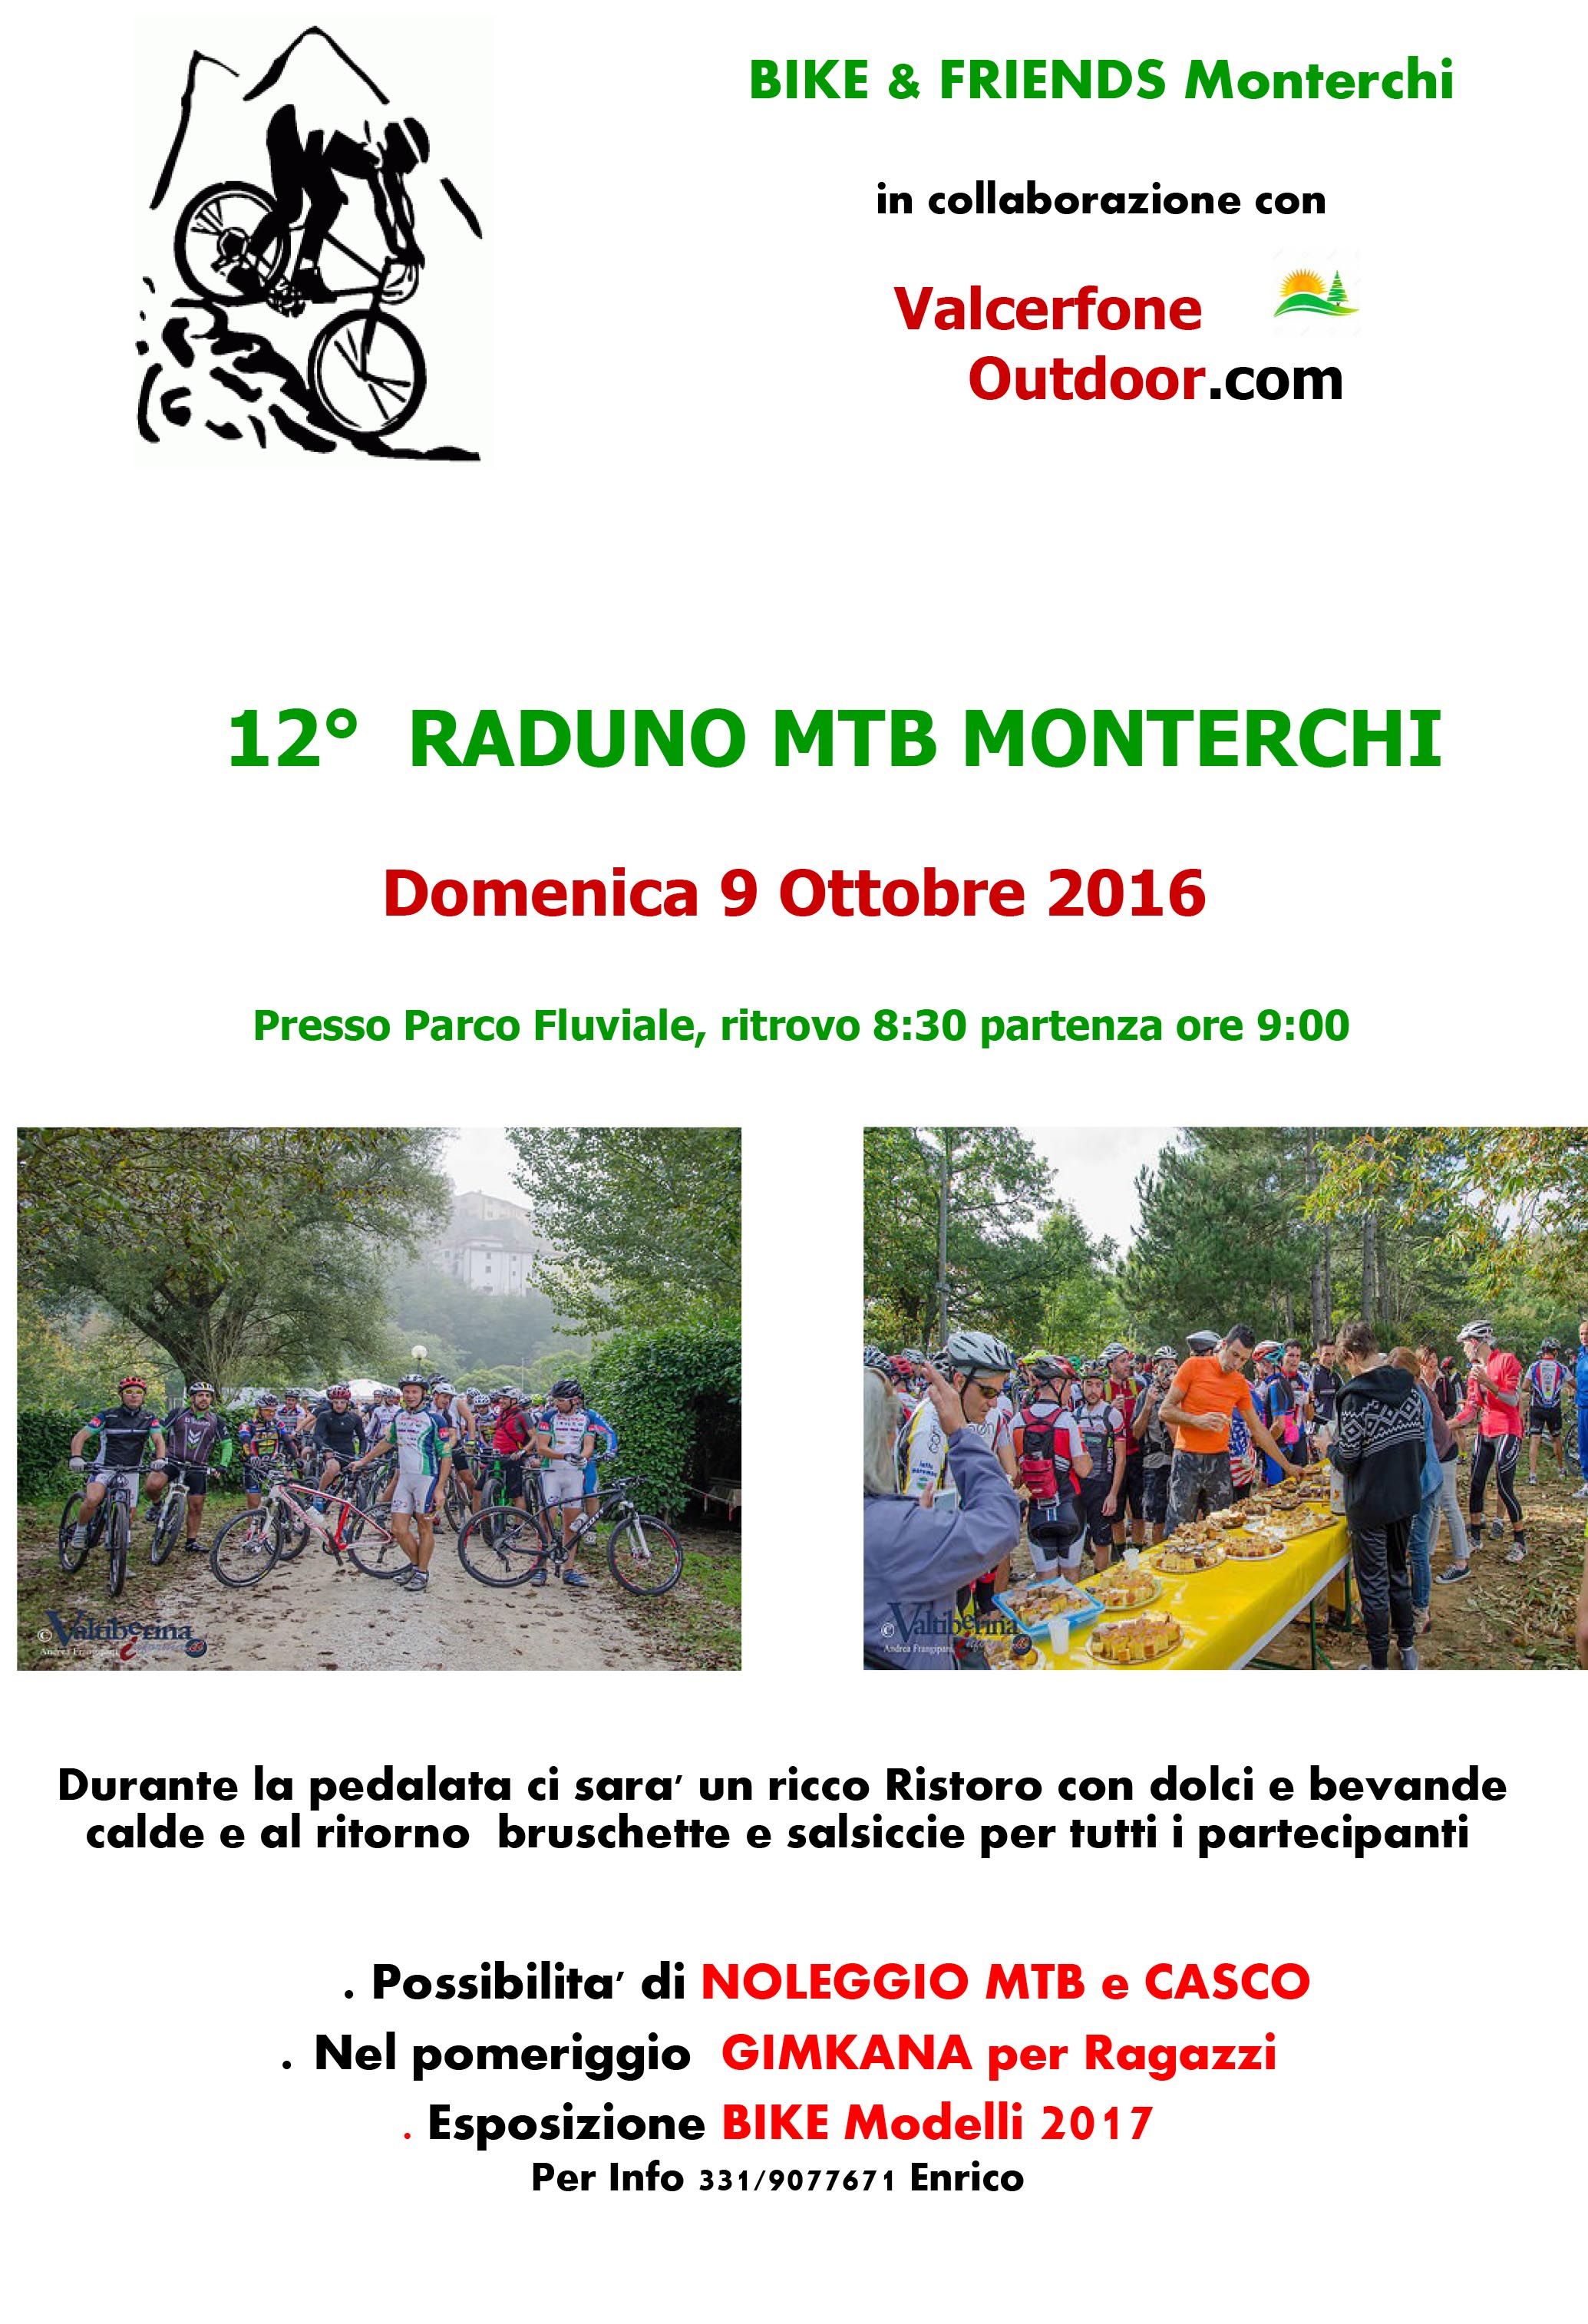 9 ottobre - Raduno di Mountain Bike al Parco Fluviale di Monterchi